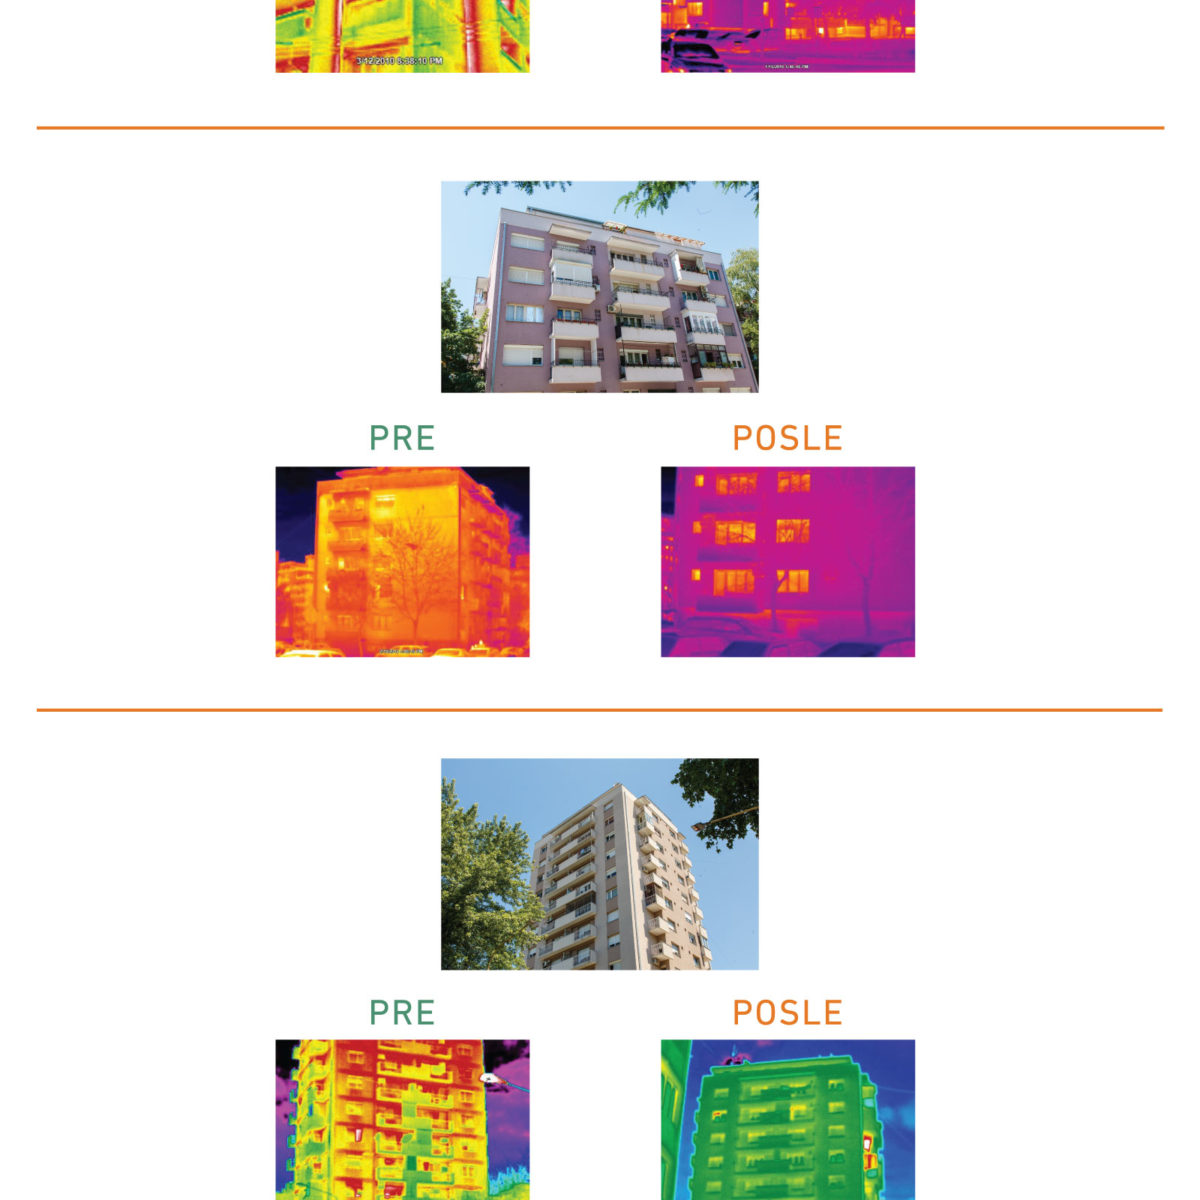 Potrošnja energije u zgradama pre i posle izolacije